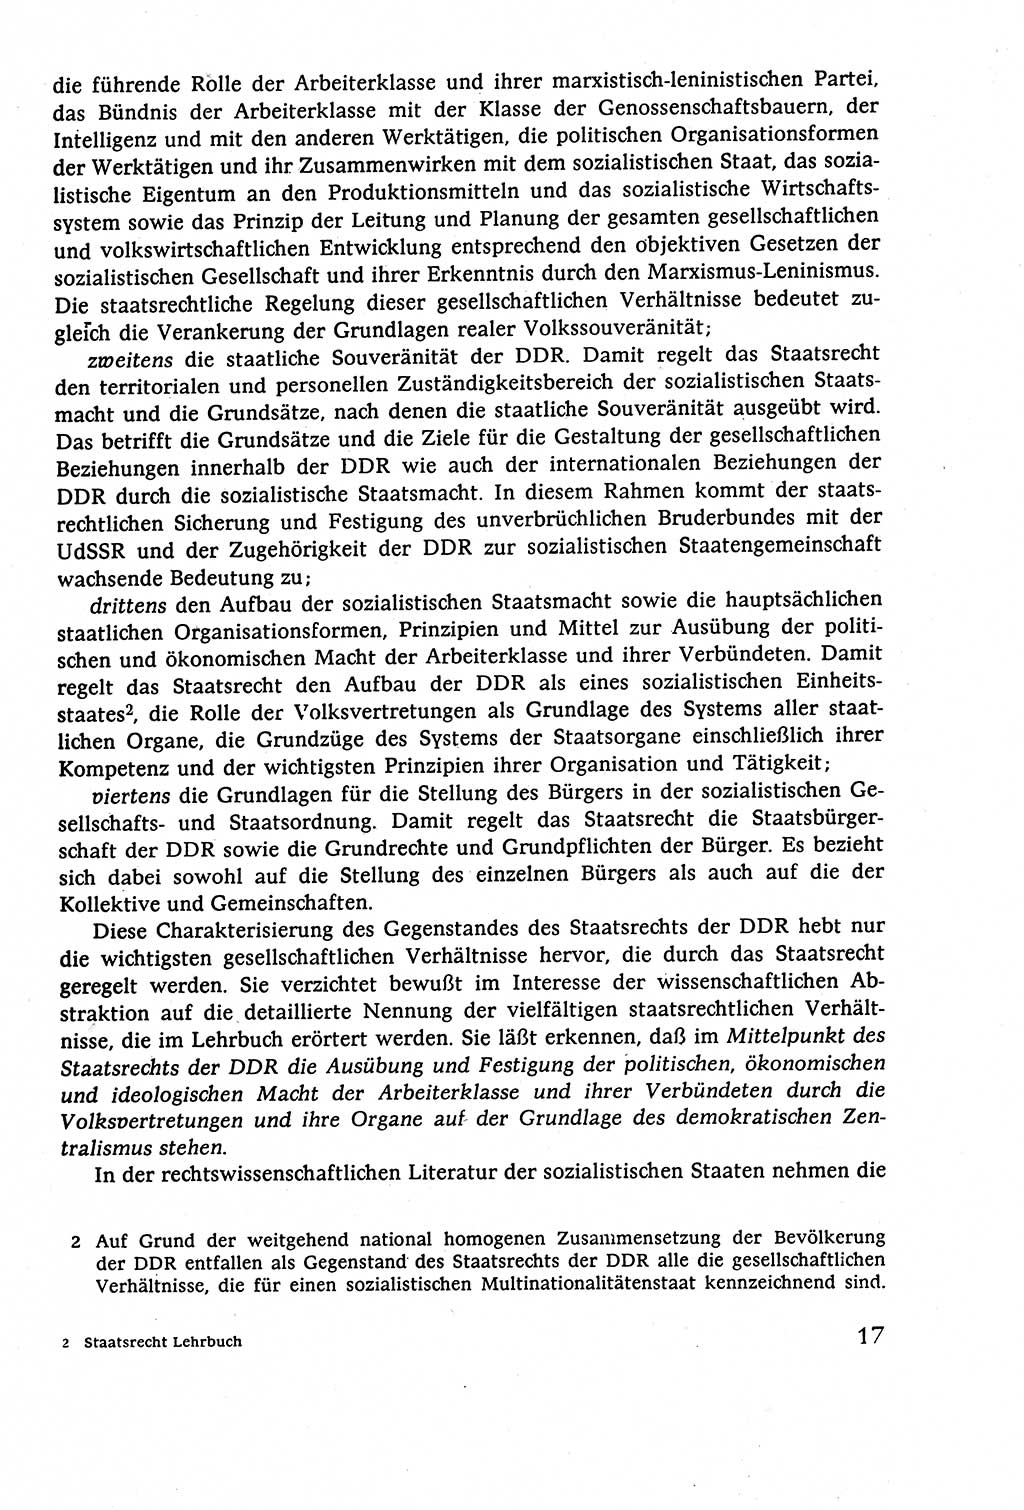 Staatsrecht der DDR (Deutsche Demokratische Republik), Lehrbuch 1977, Seite 17 (St.-R. DDR Lb. 1977, S. 17)